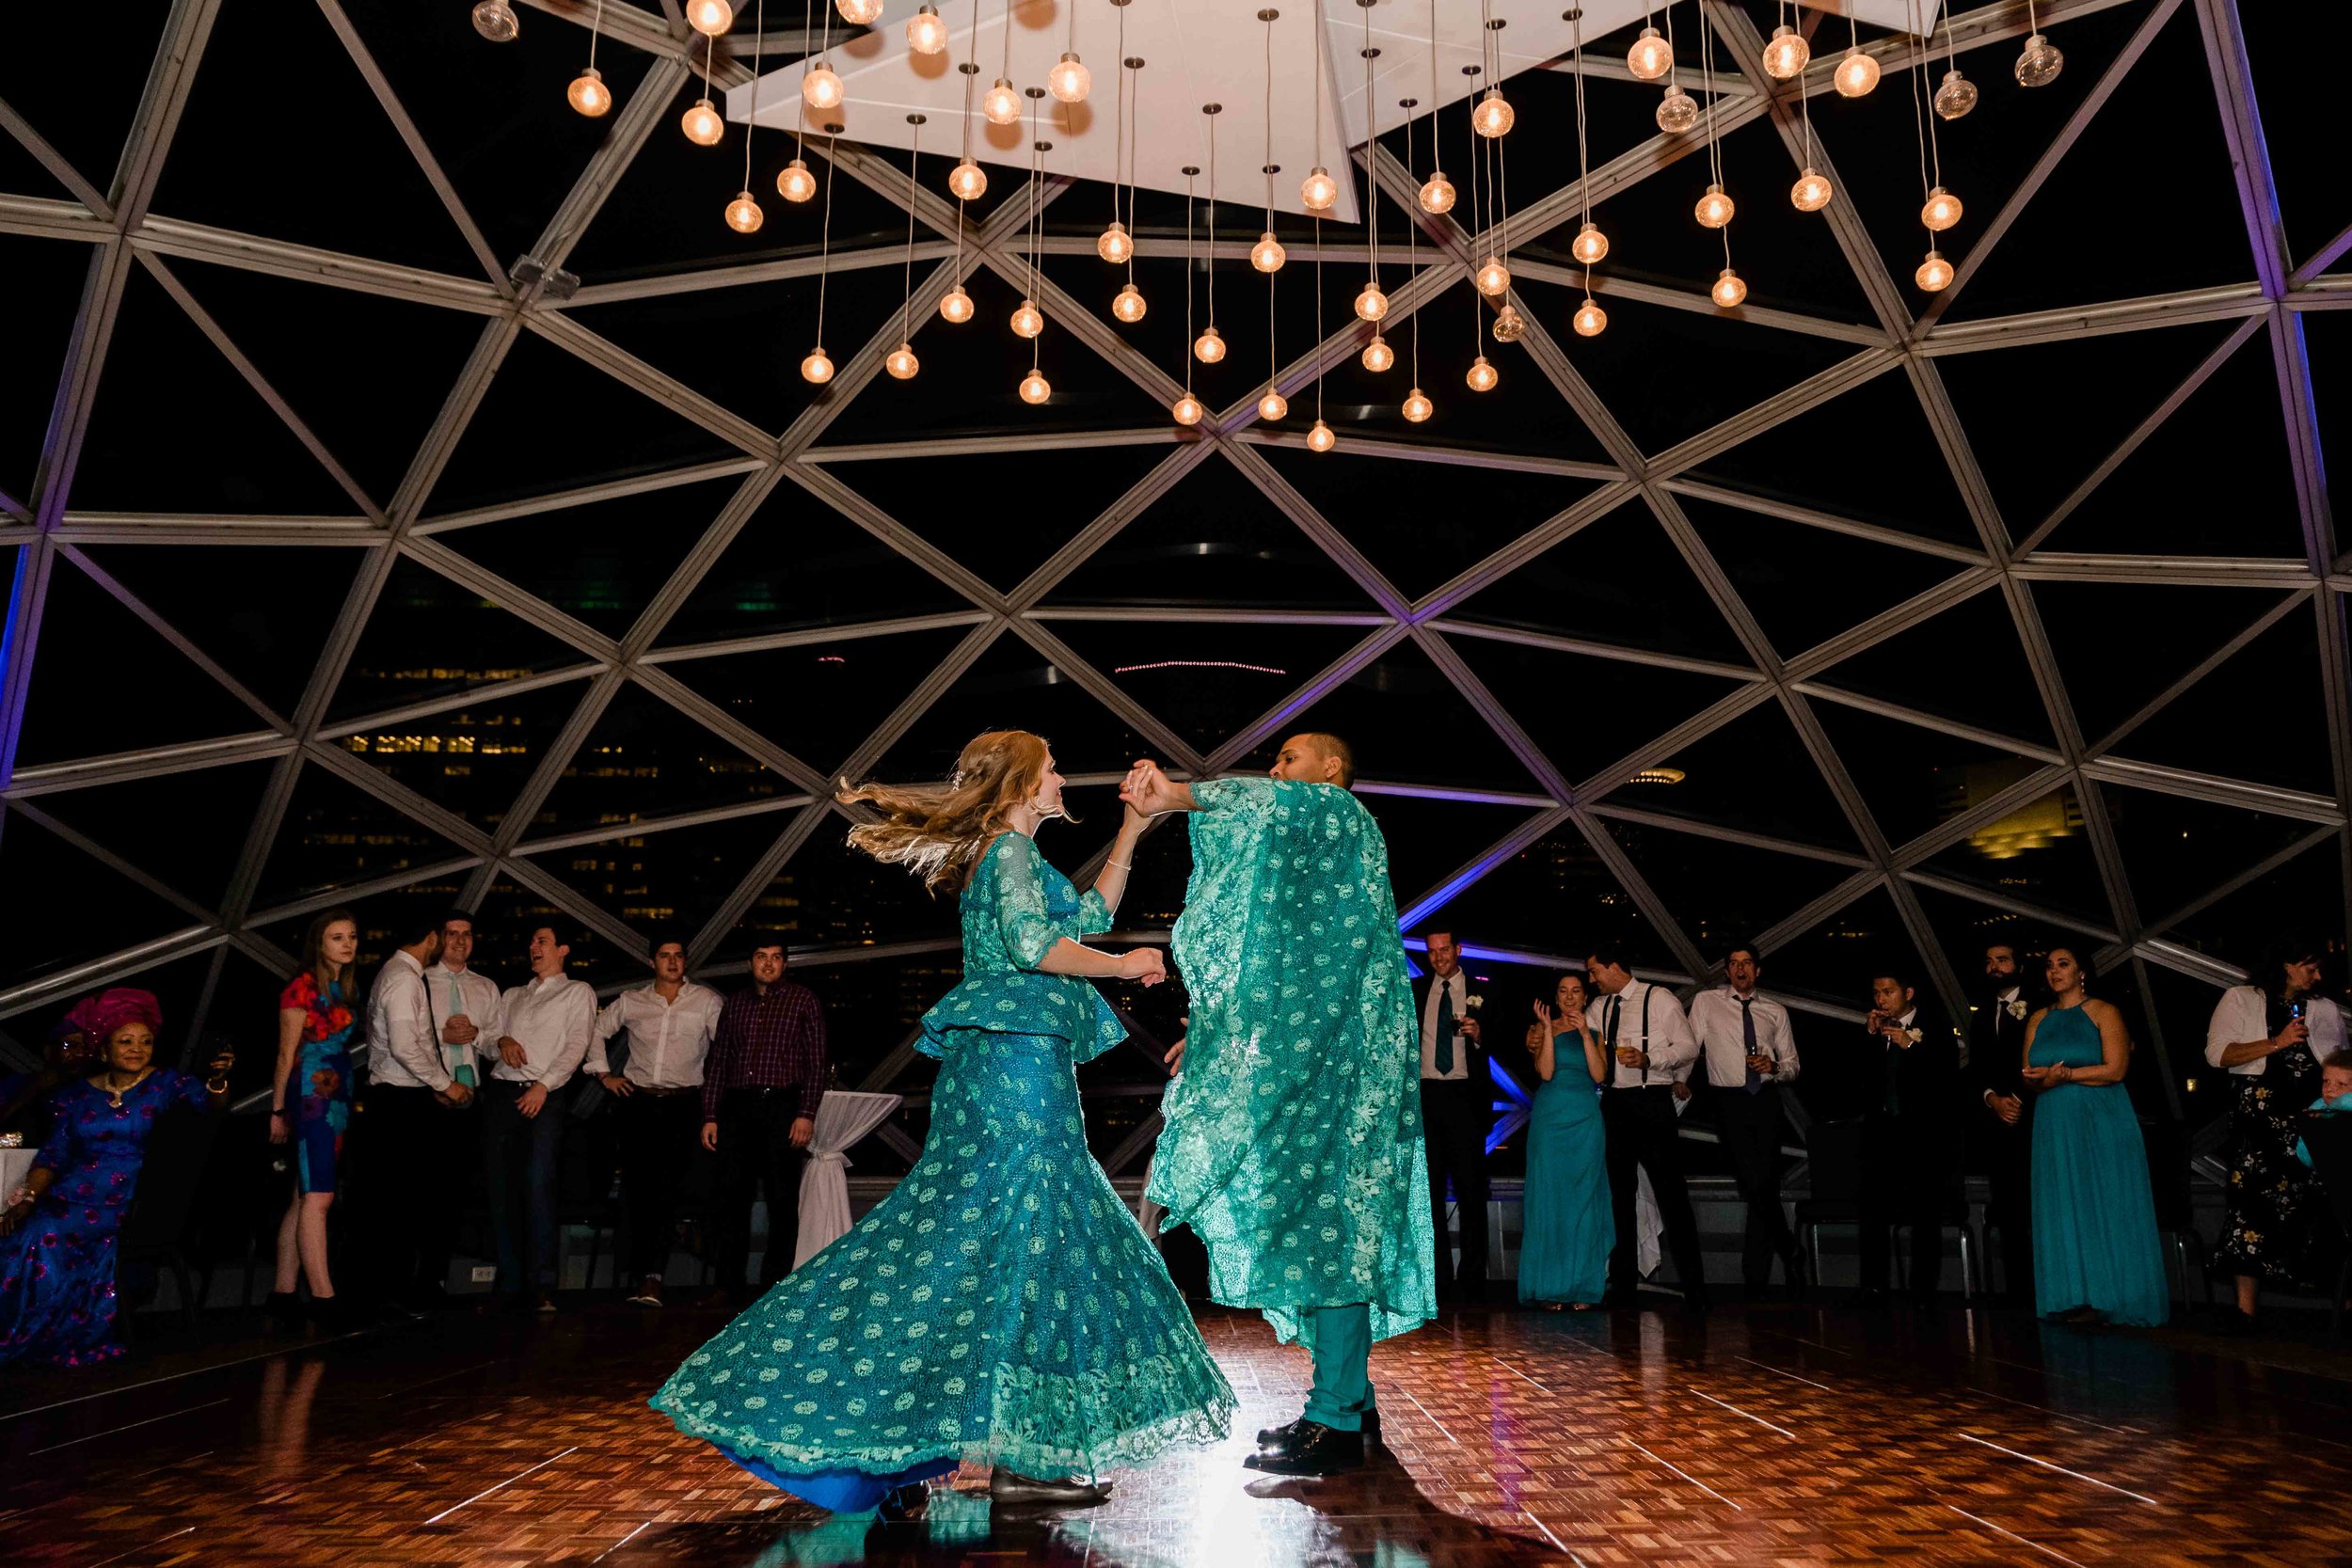 Groom spins bride around during first dance